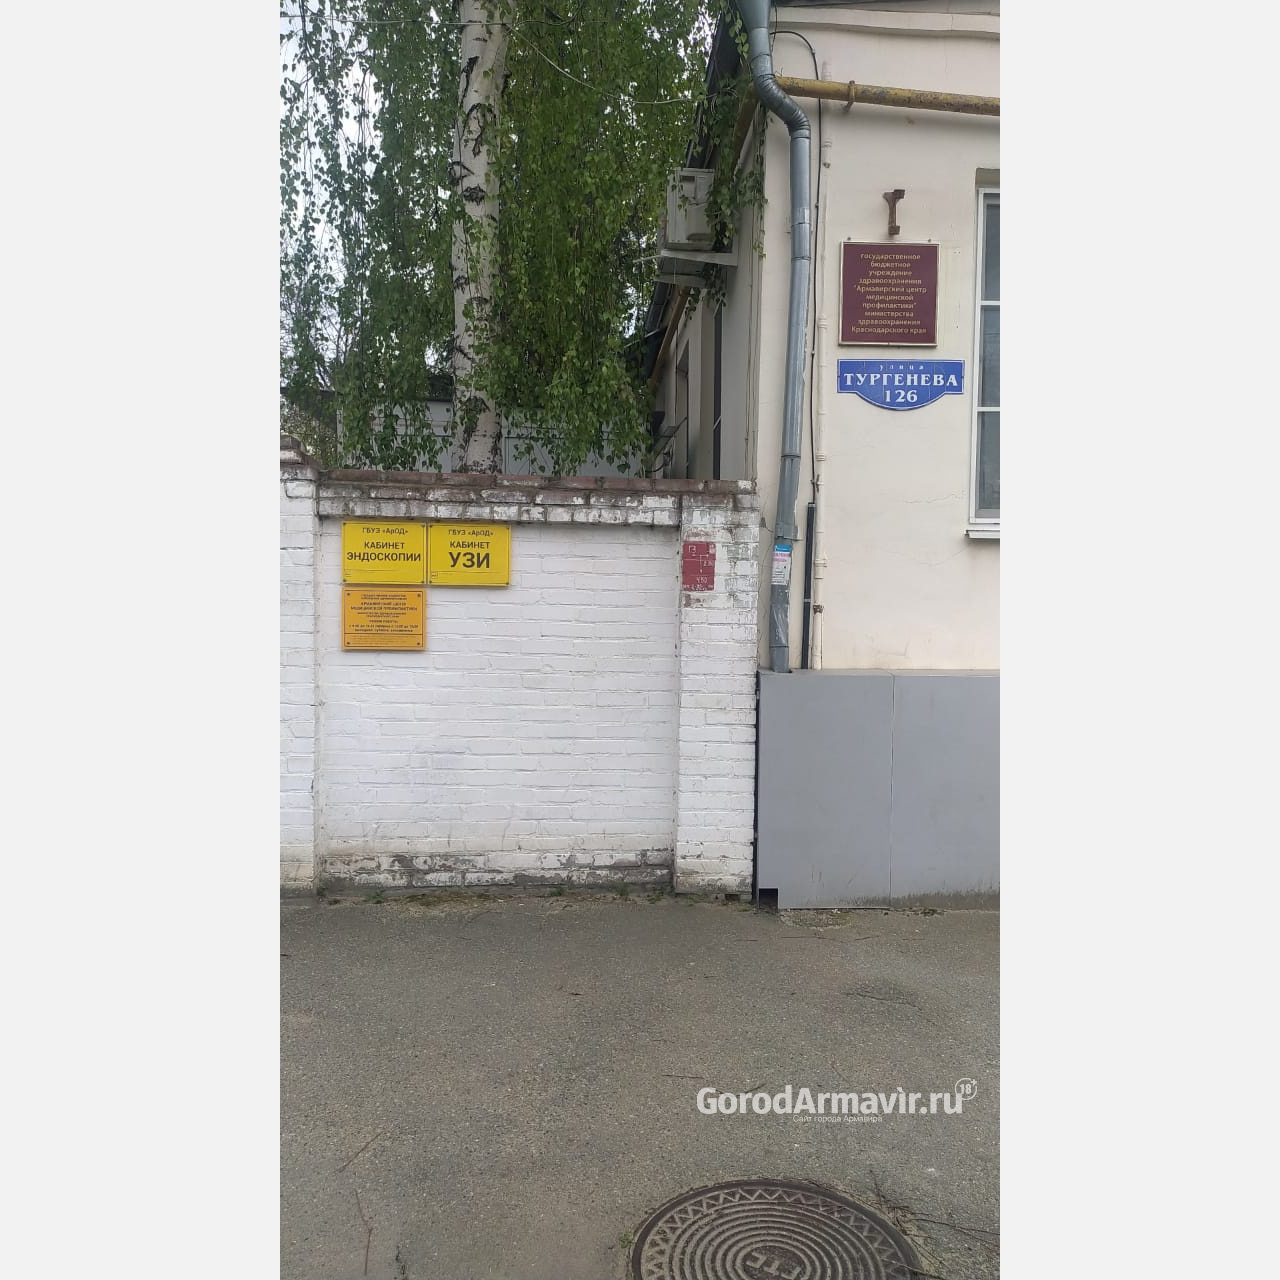 Со 2 мая поликлиника Онкологического диспансера переедет на улицу Тургенева в Армавире